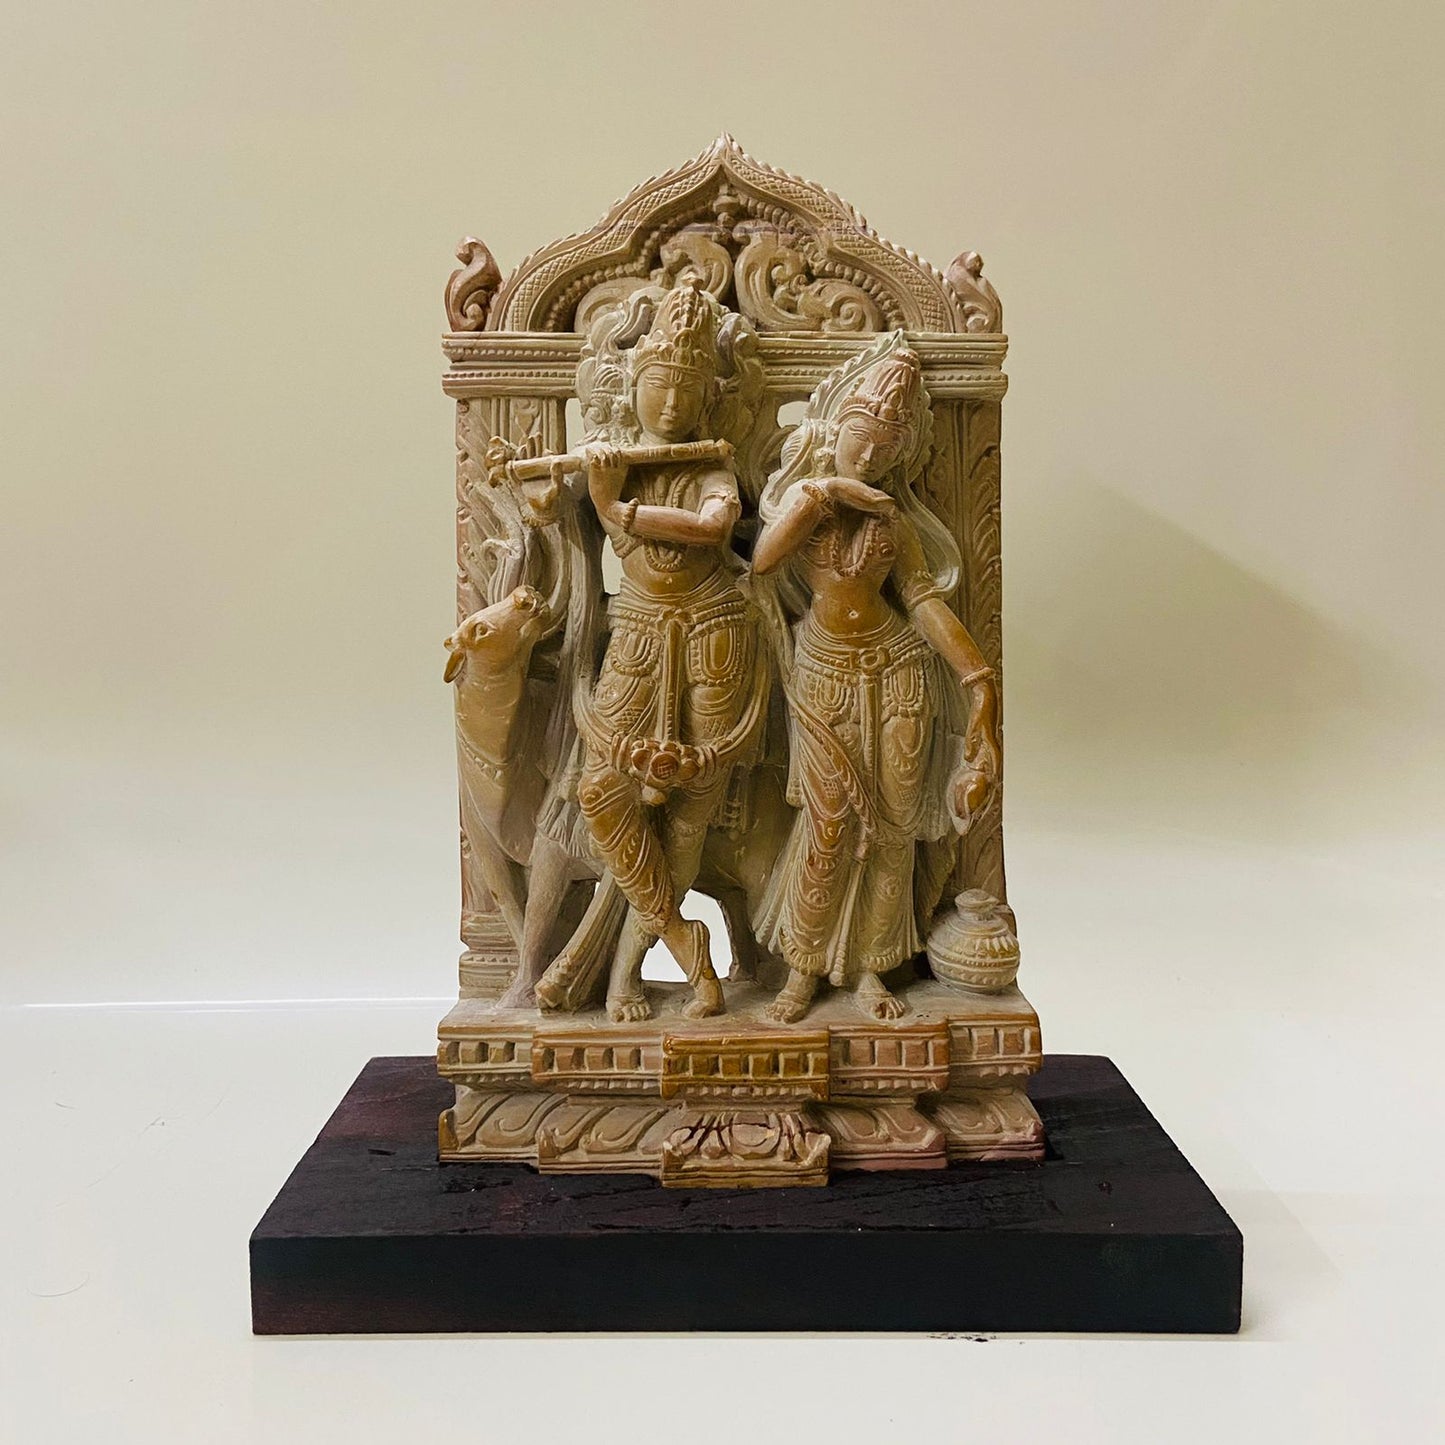 Radha Krishna Stone Statue, Radha Krishna, Radha Krishna Statue, Radha Krishna Deities, Lord Krishna, Radha Goddess